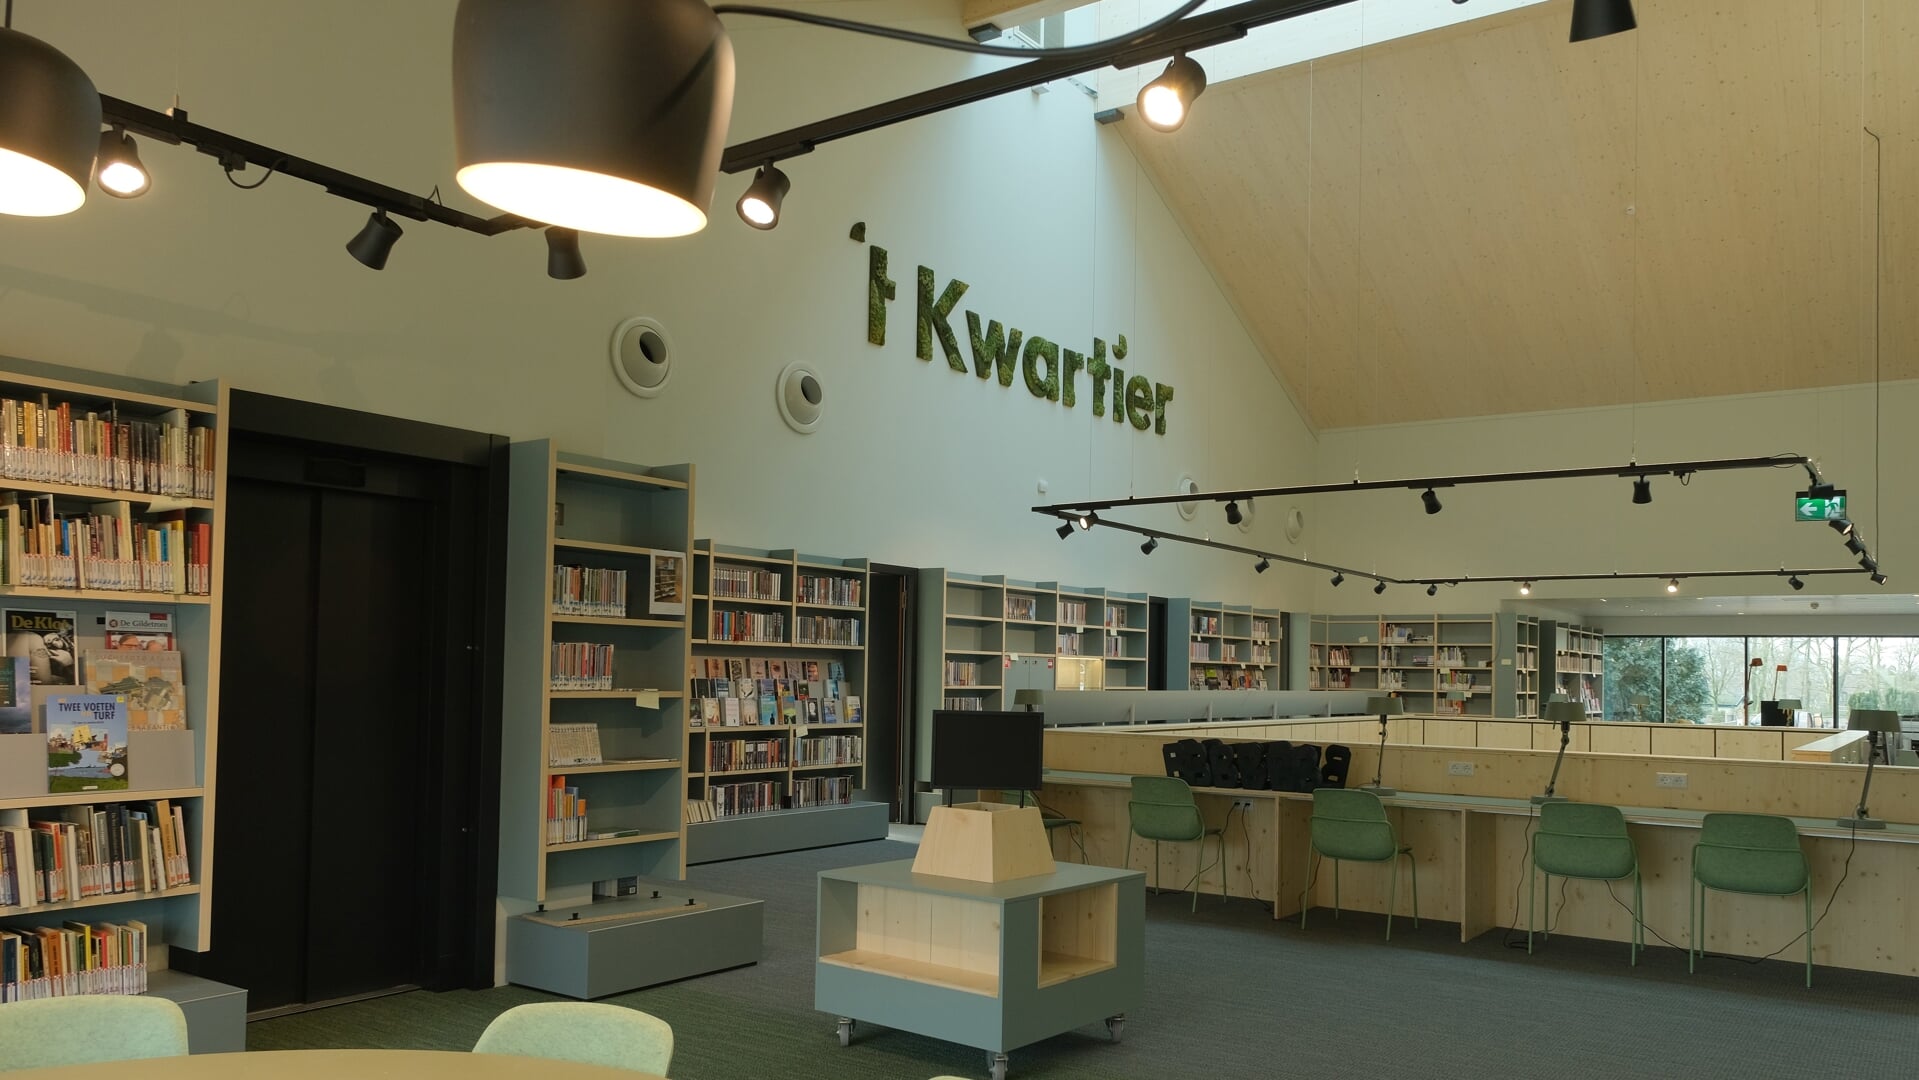 De bibliotheek is gevestigd in gemeenschapshuis 't Kwartier in Asten.